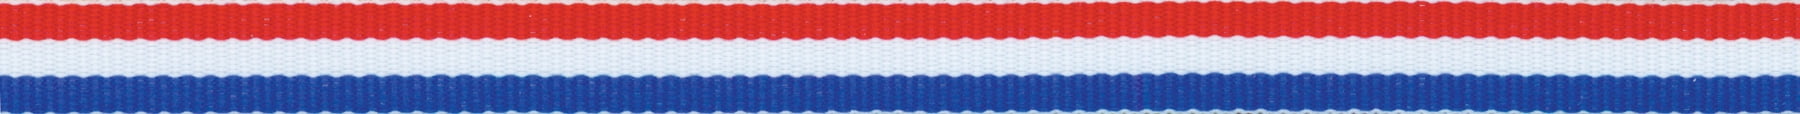 Offray Szalag Szőtt Tri-Stripe 3 8 Piros, Wht, Royal